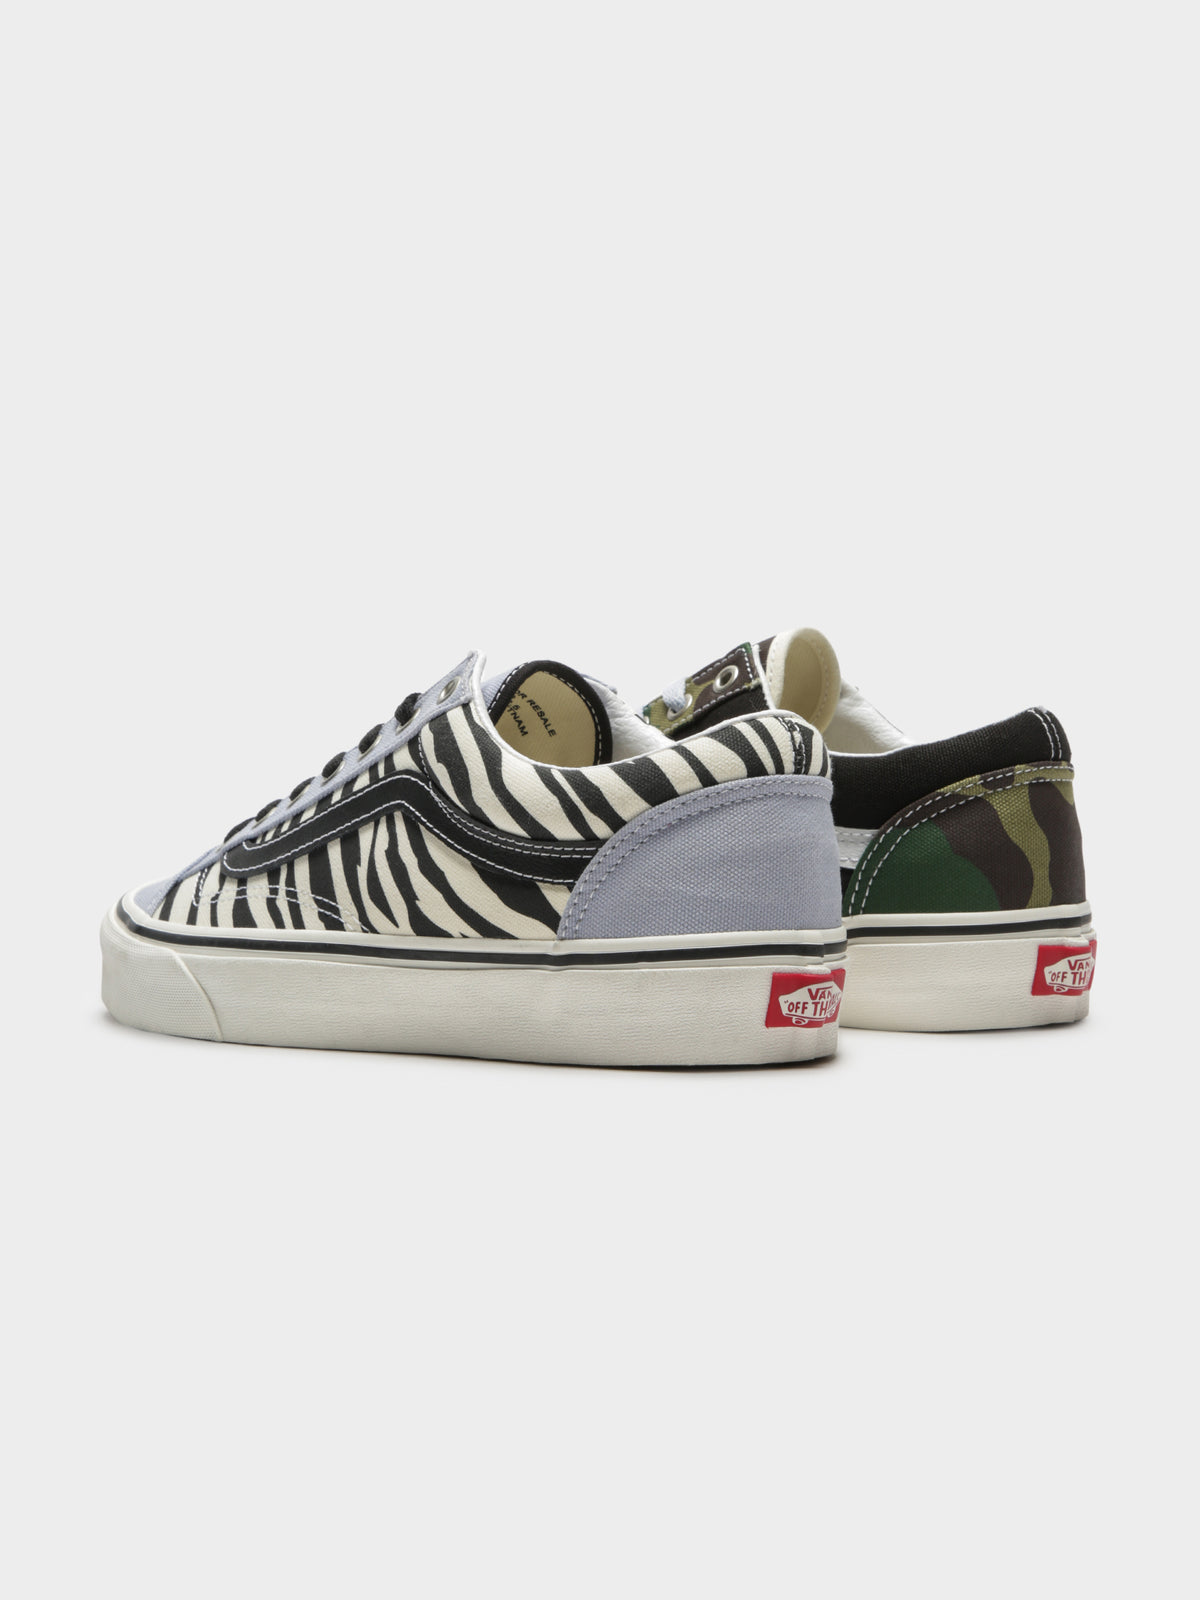 Unisex Style 36 Mismatch Sneakers in Zebra